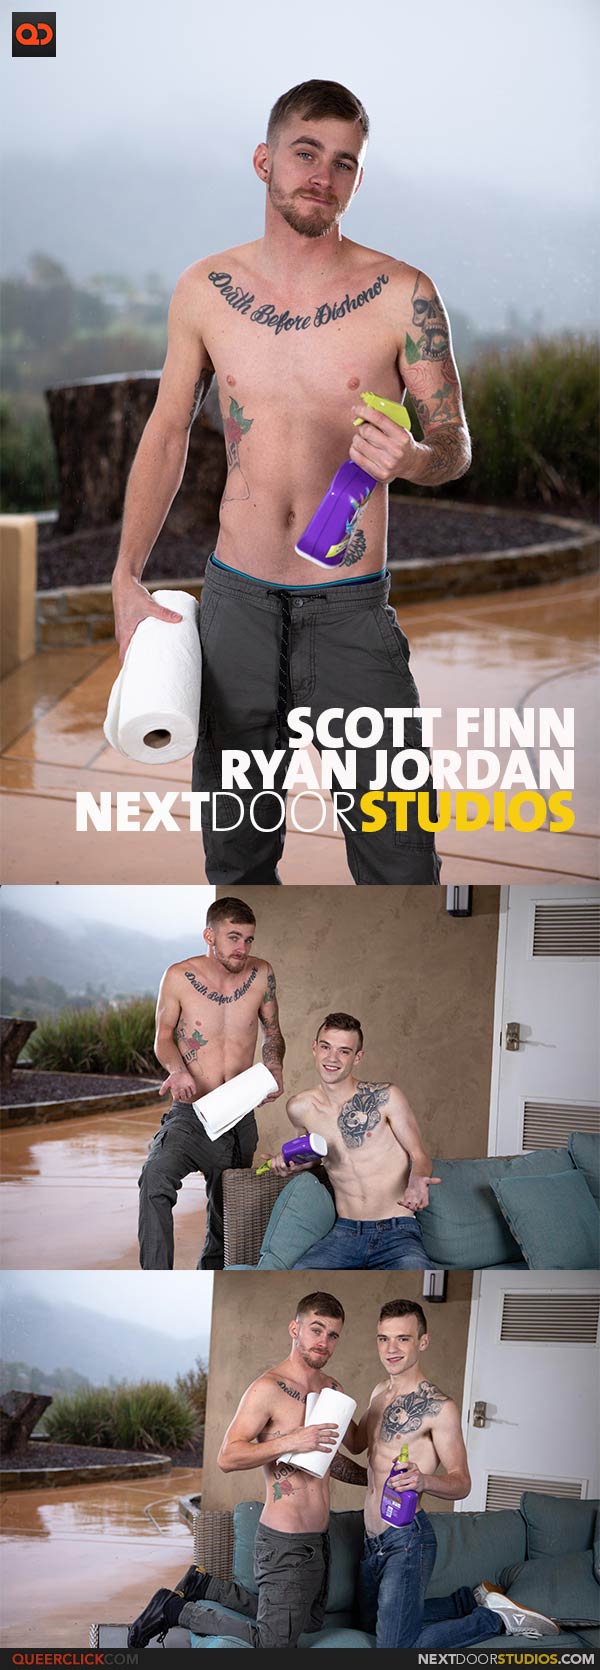 NextDoorStudios: Scott Finn and Ryan Jordan